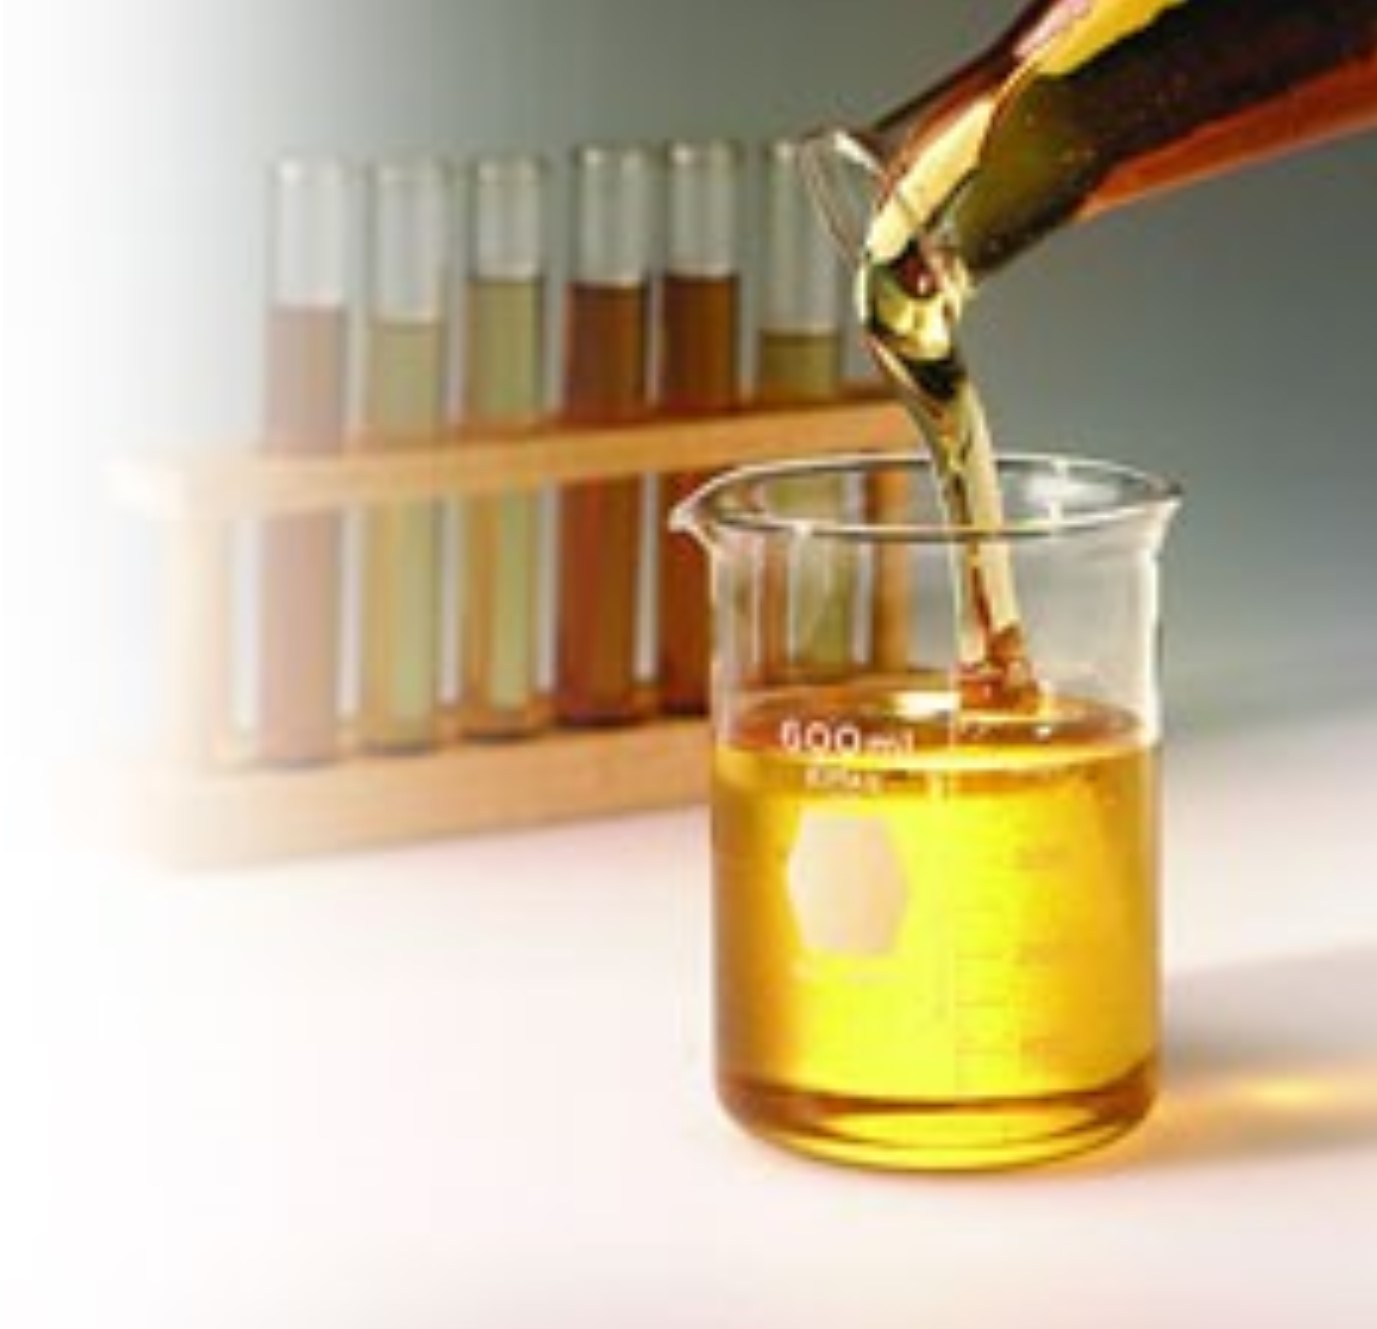 Пробой трансформаторного масла. Экспертиза качества растительных масел. Электроизоляционные масла. Лаборатория масел. Моторное масло в пробирке.